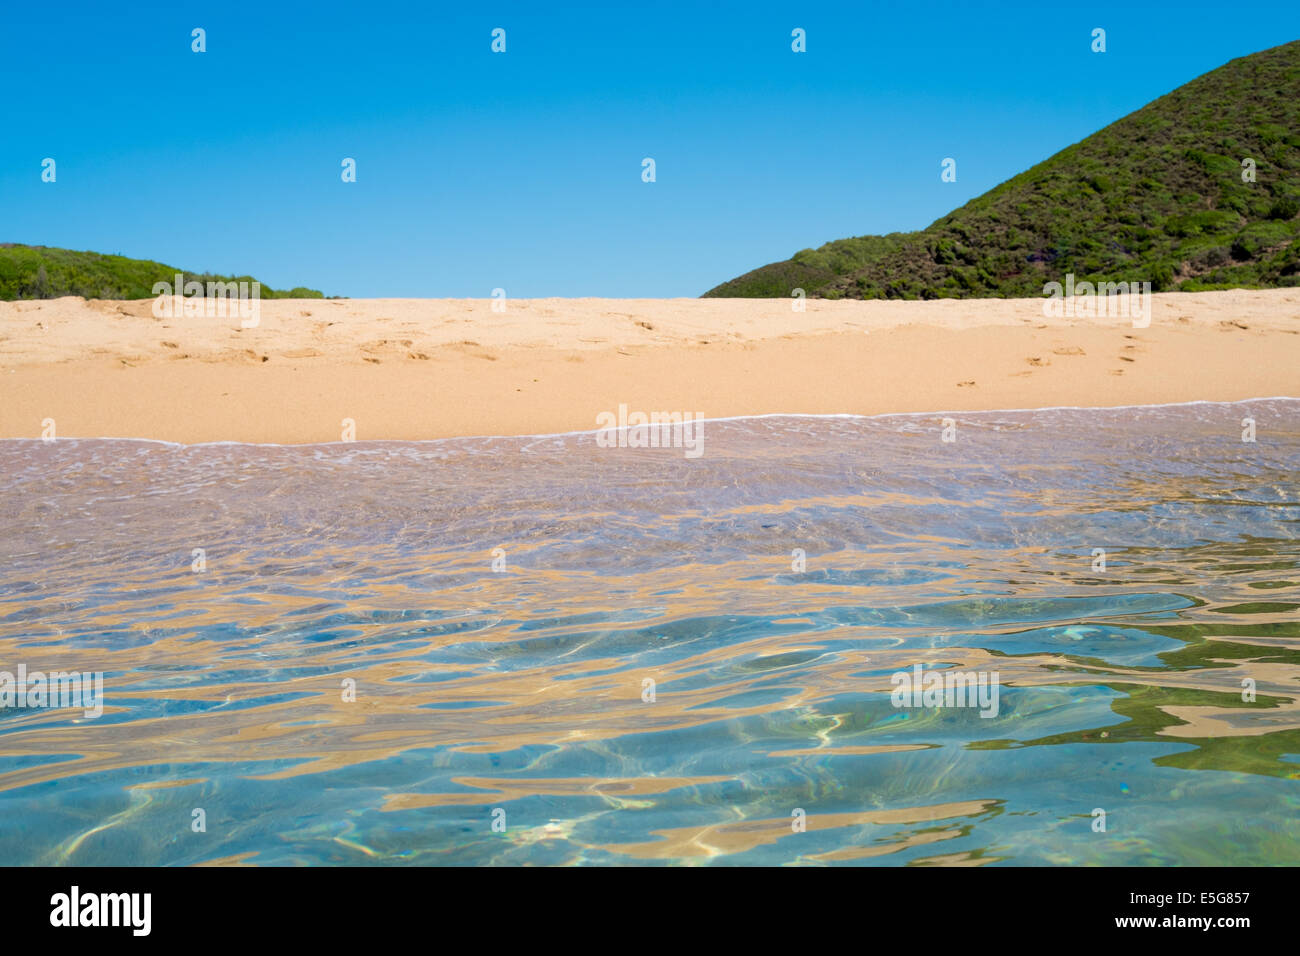 Sea and beach along green coast, west Sardinia, Italy Stock Photo